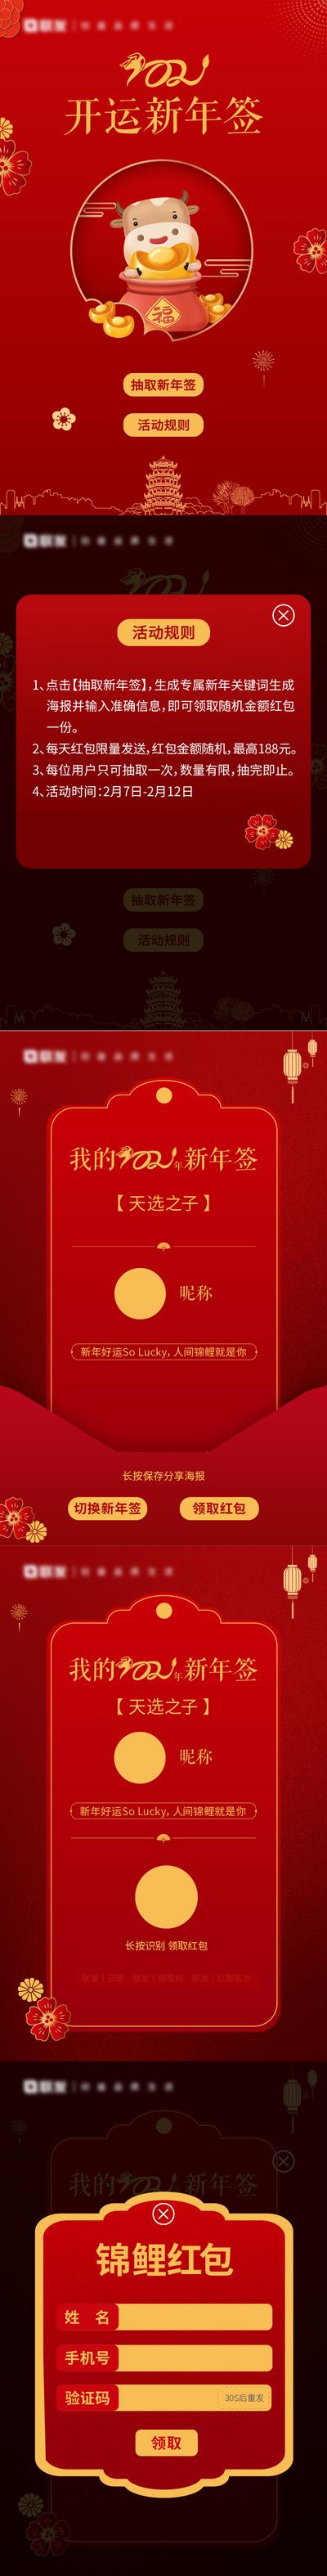 南门网 H5 专题设计 中国传统节日 新年 红金 红包 活动 游戏